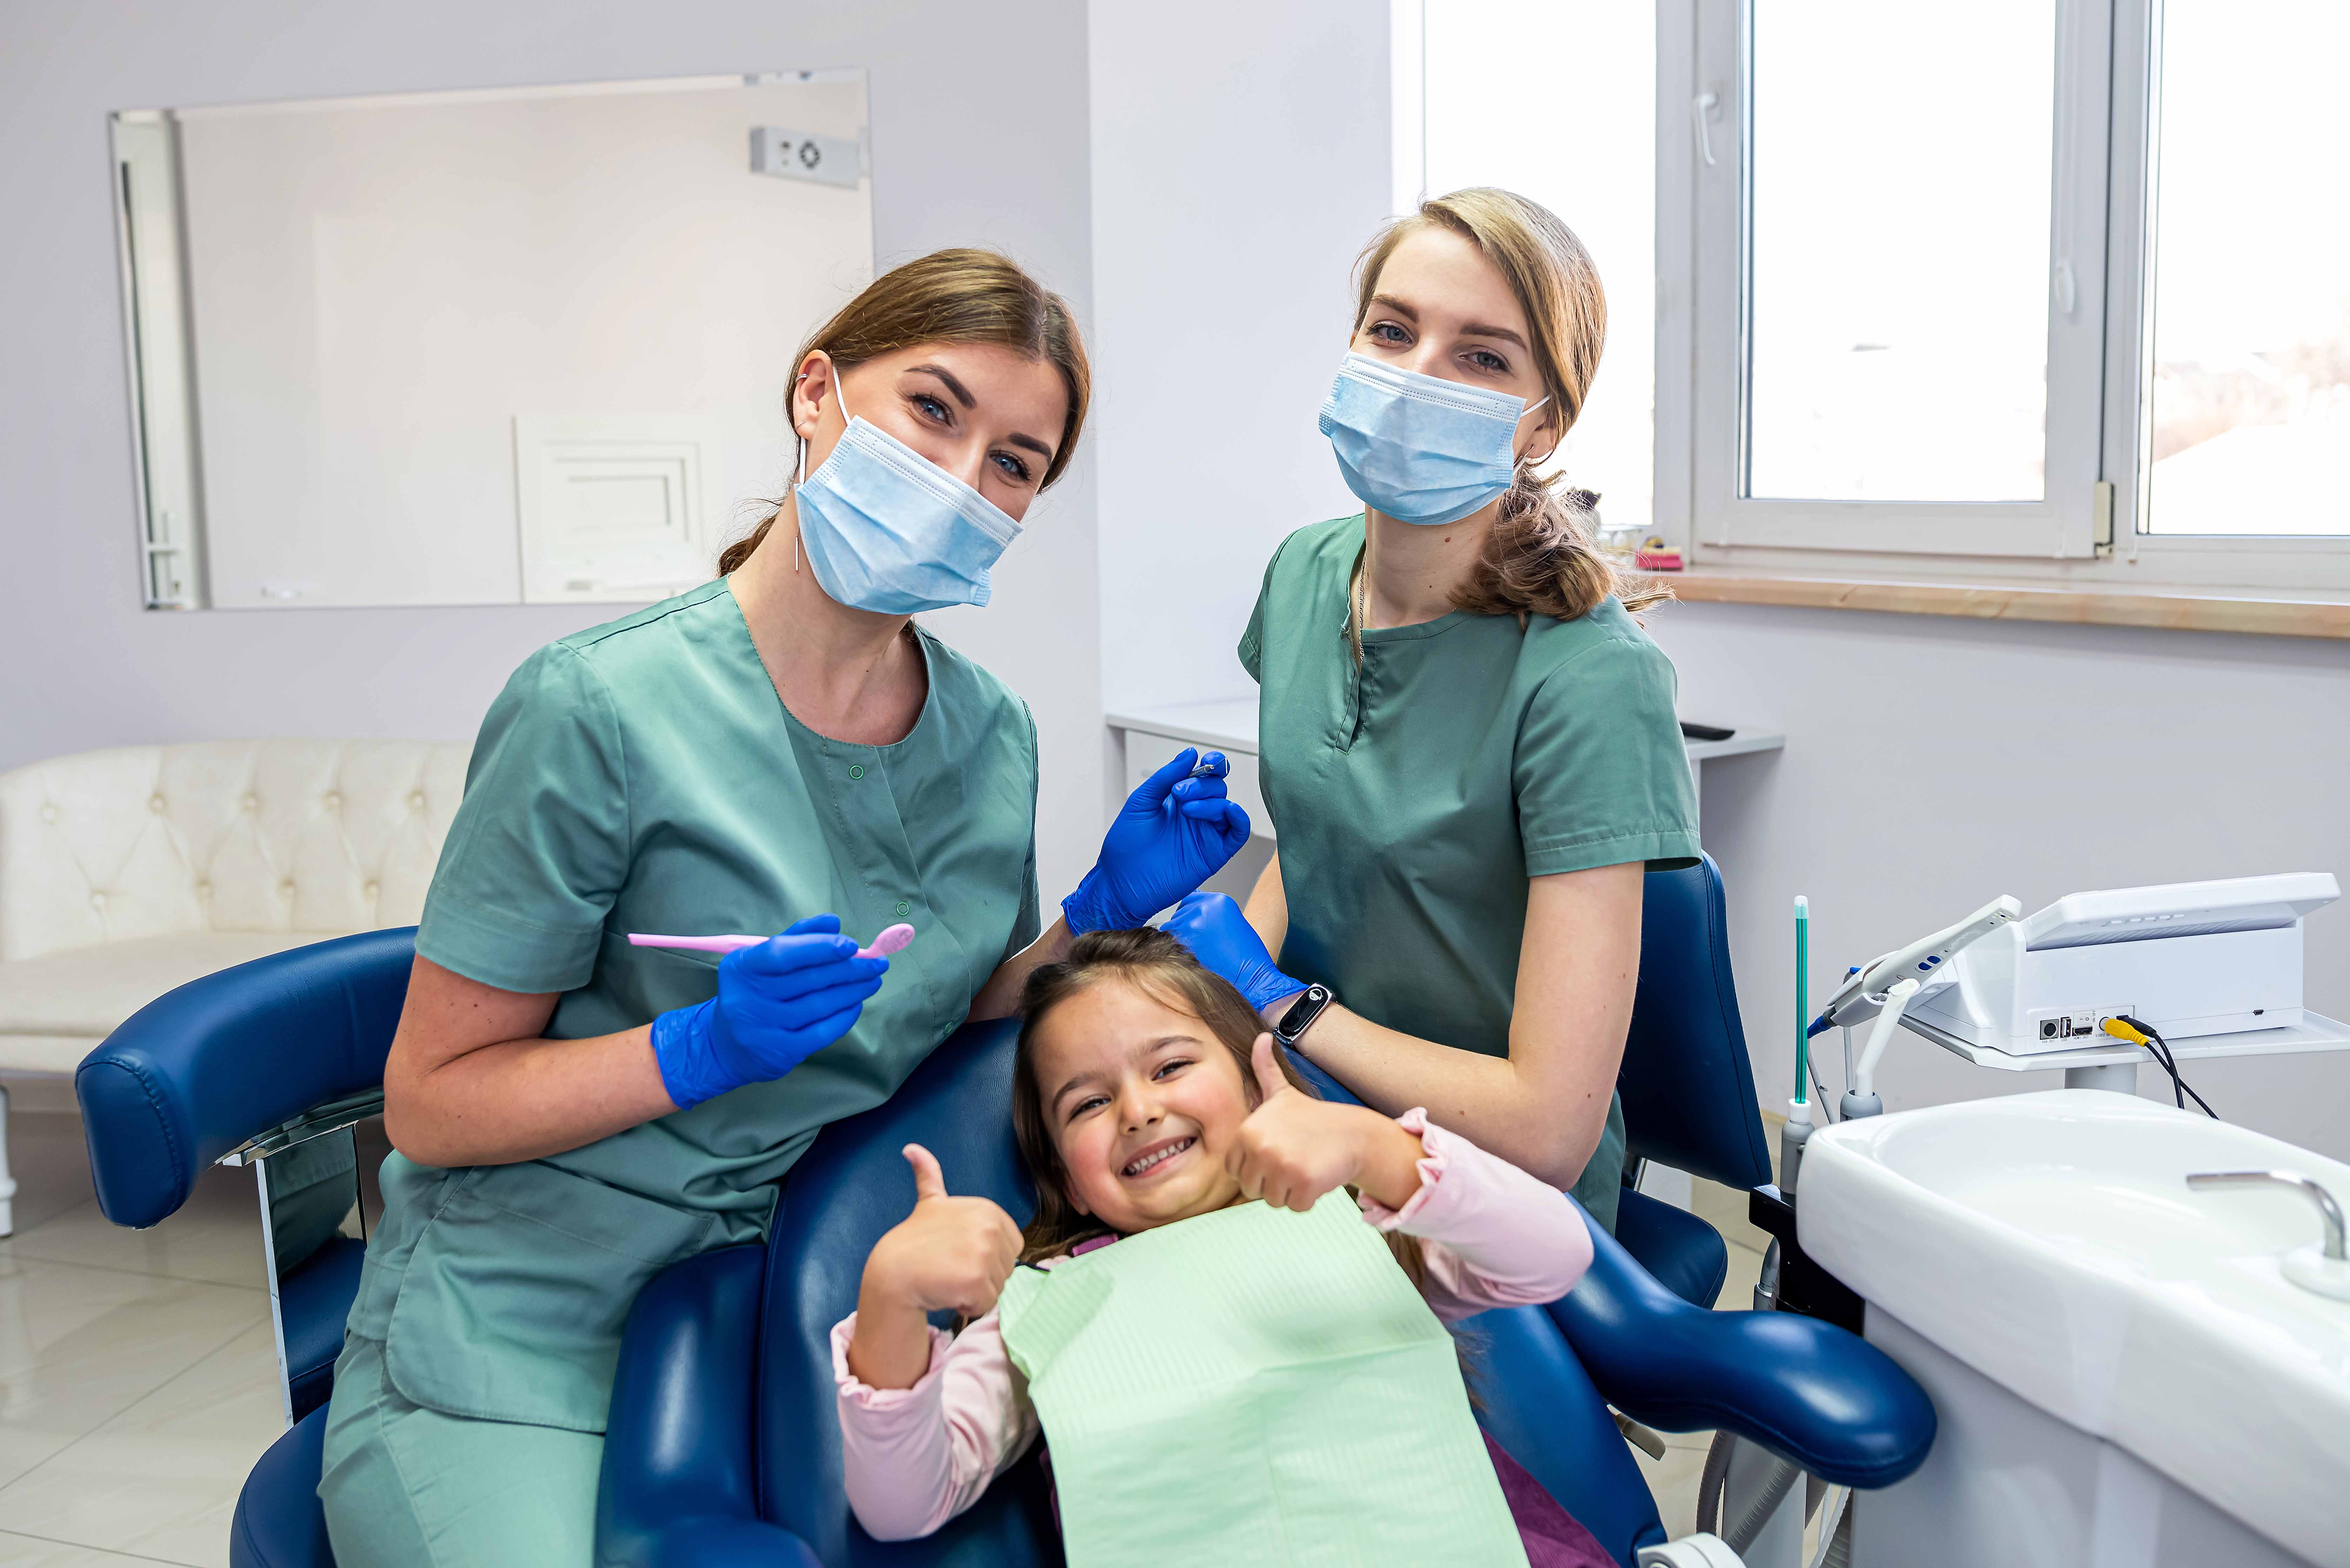 歯科の椅子に座る女の子と女性歯科医師